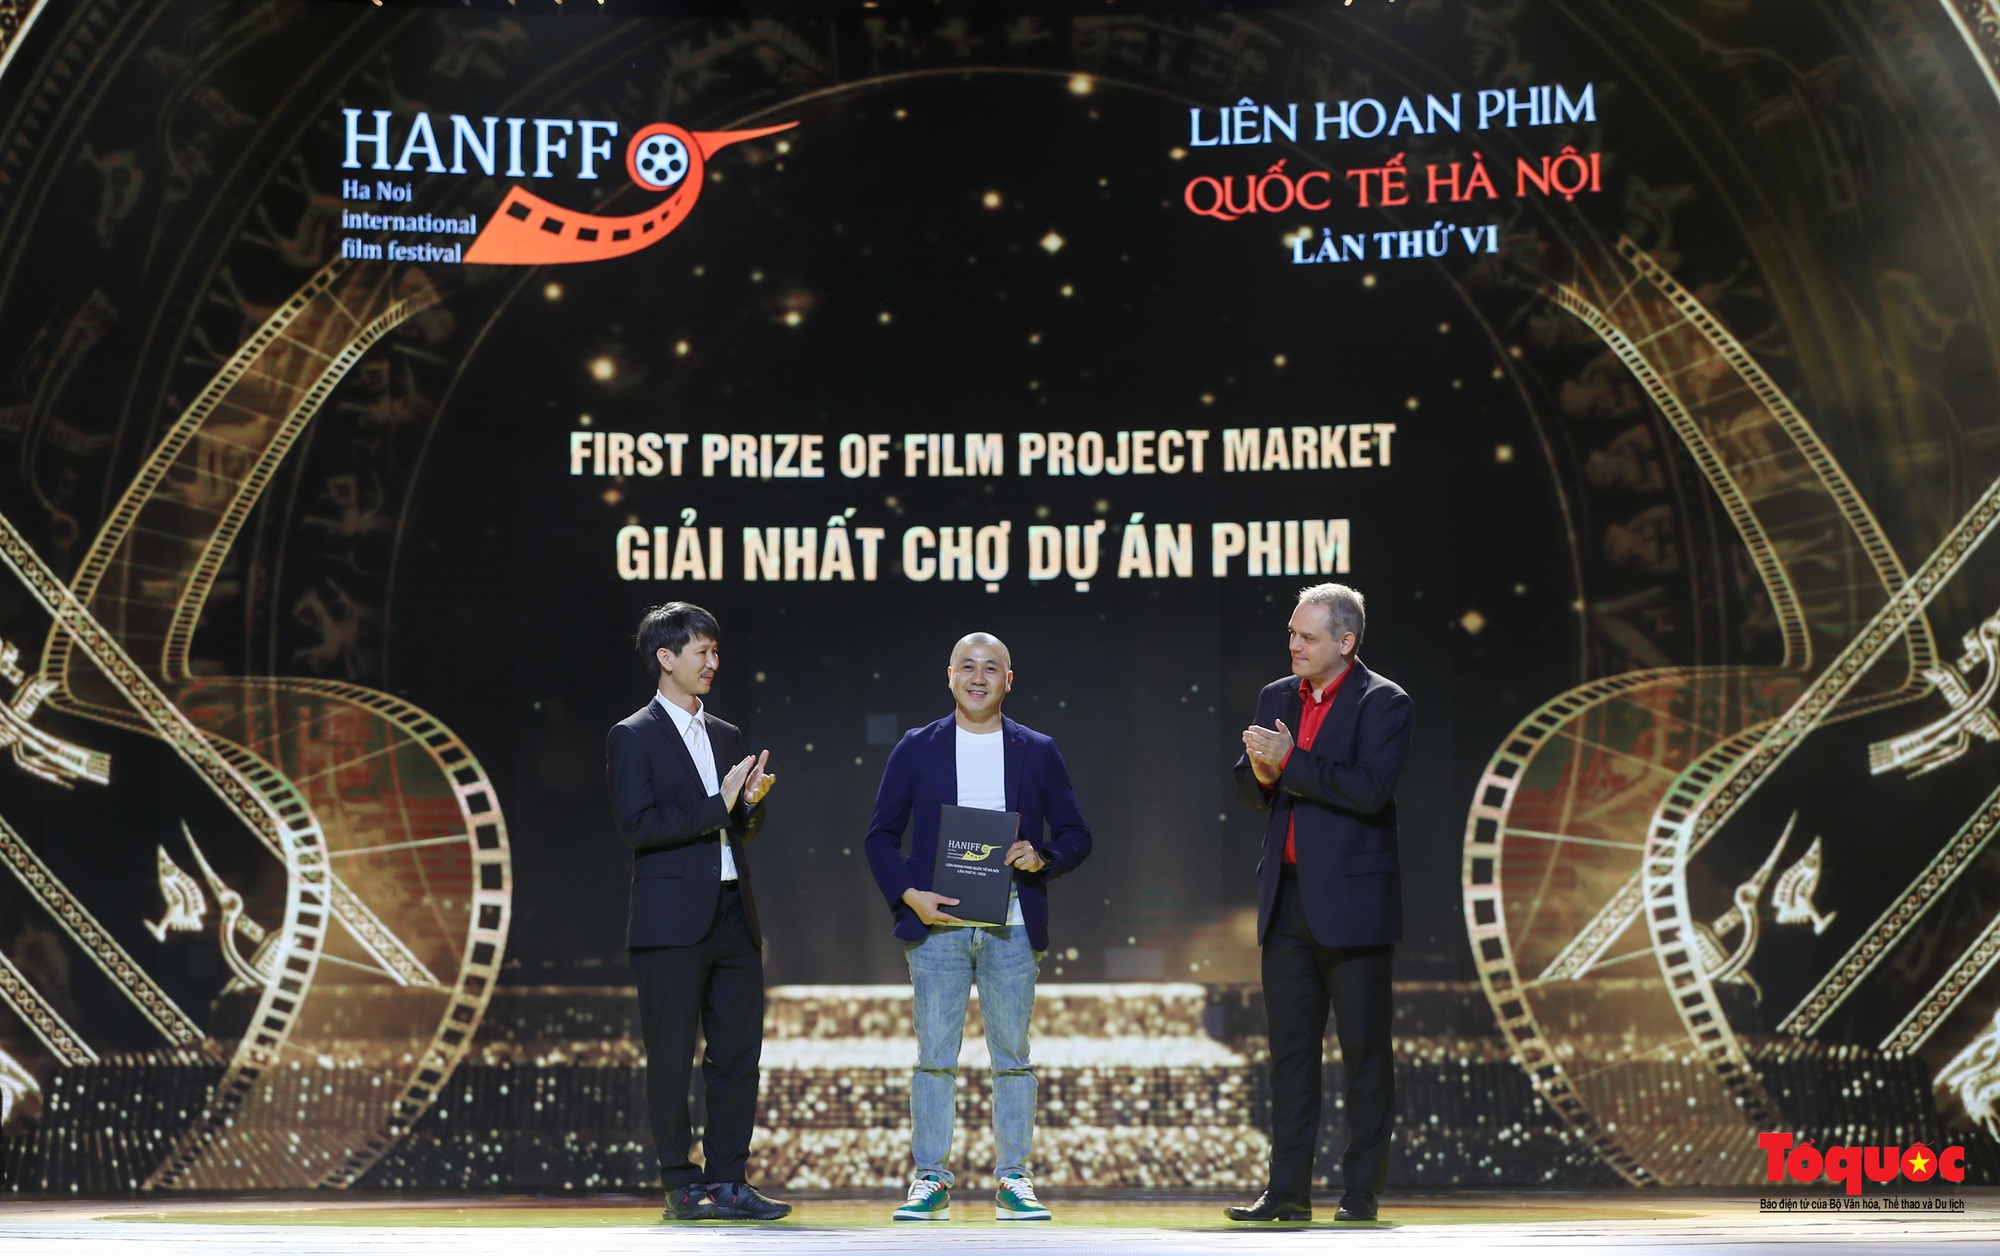 Bế mạc HANIFF 2022: 12 hàng mục giải thưởng trao cho các bộ phim, diễn viên, đạo diễn xuất sắc - Ảnh 12.